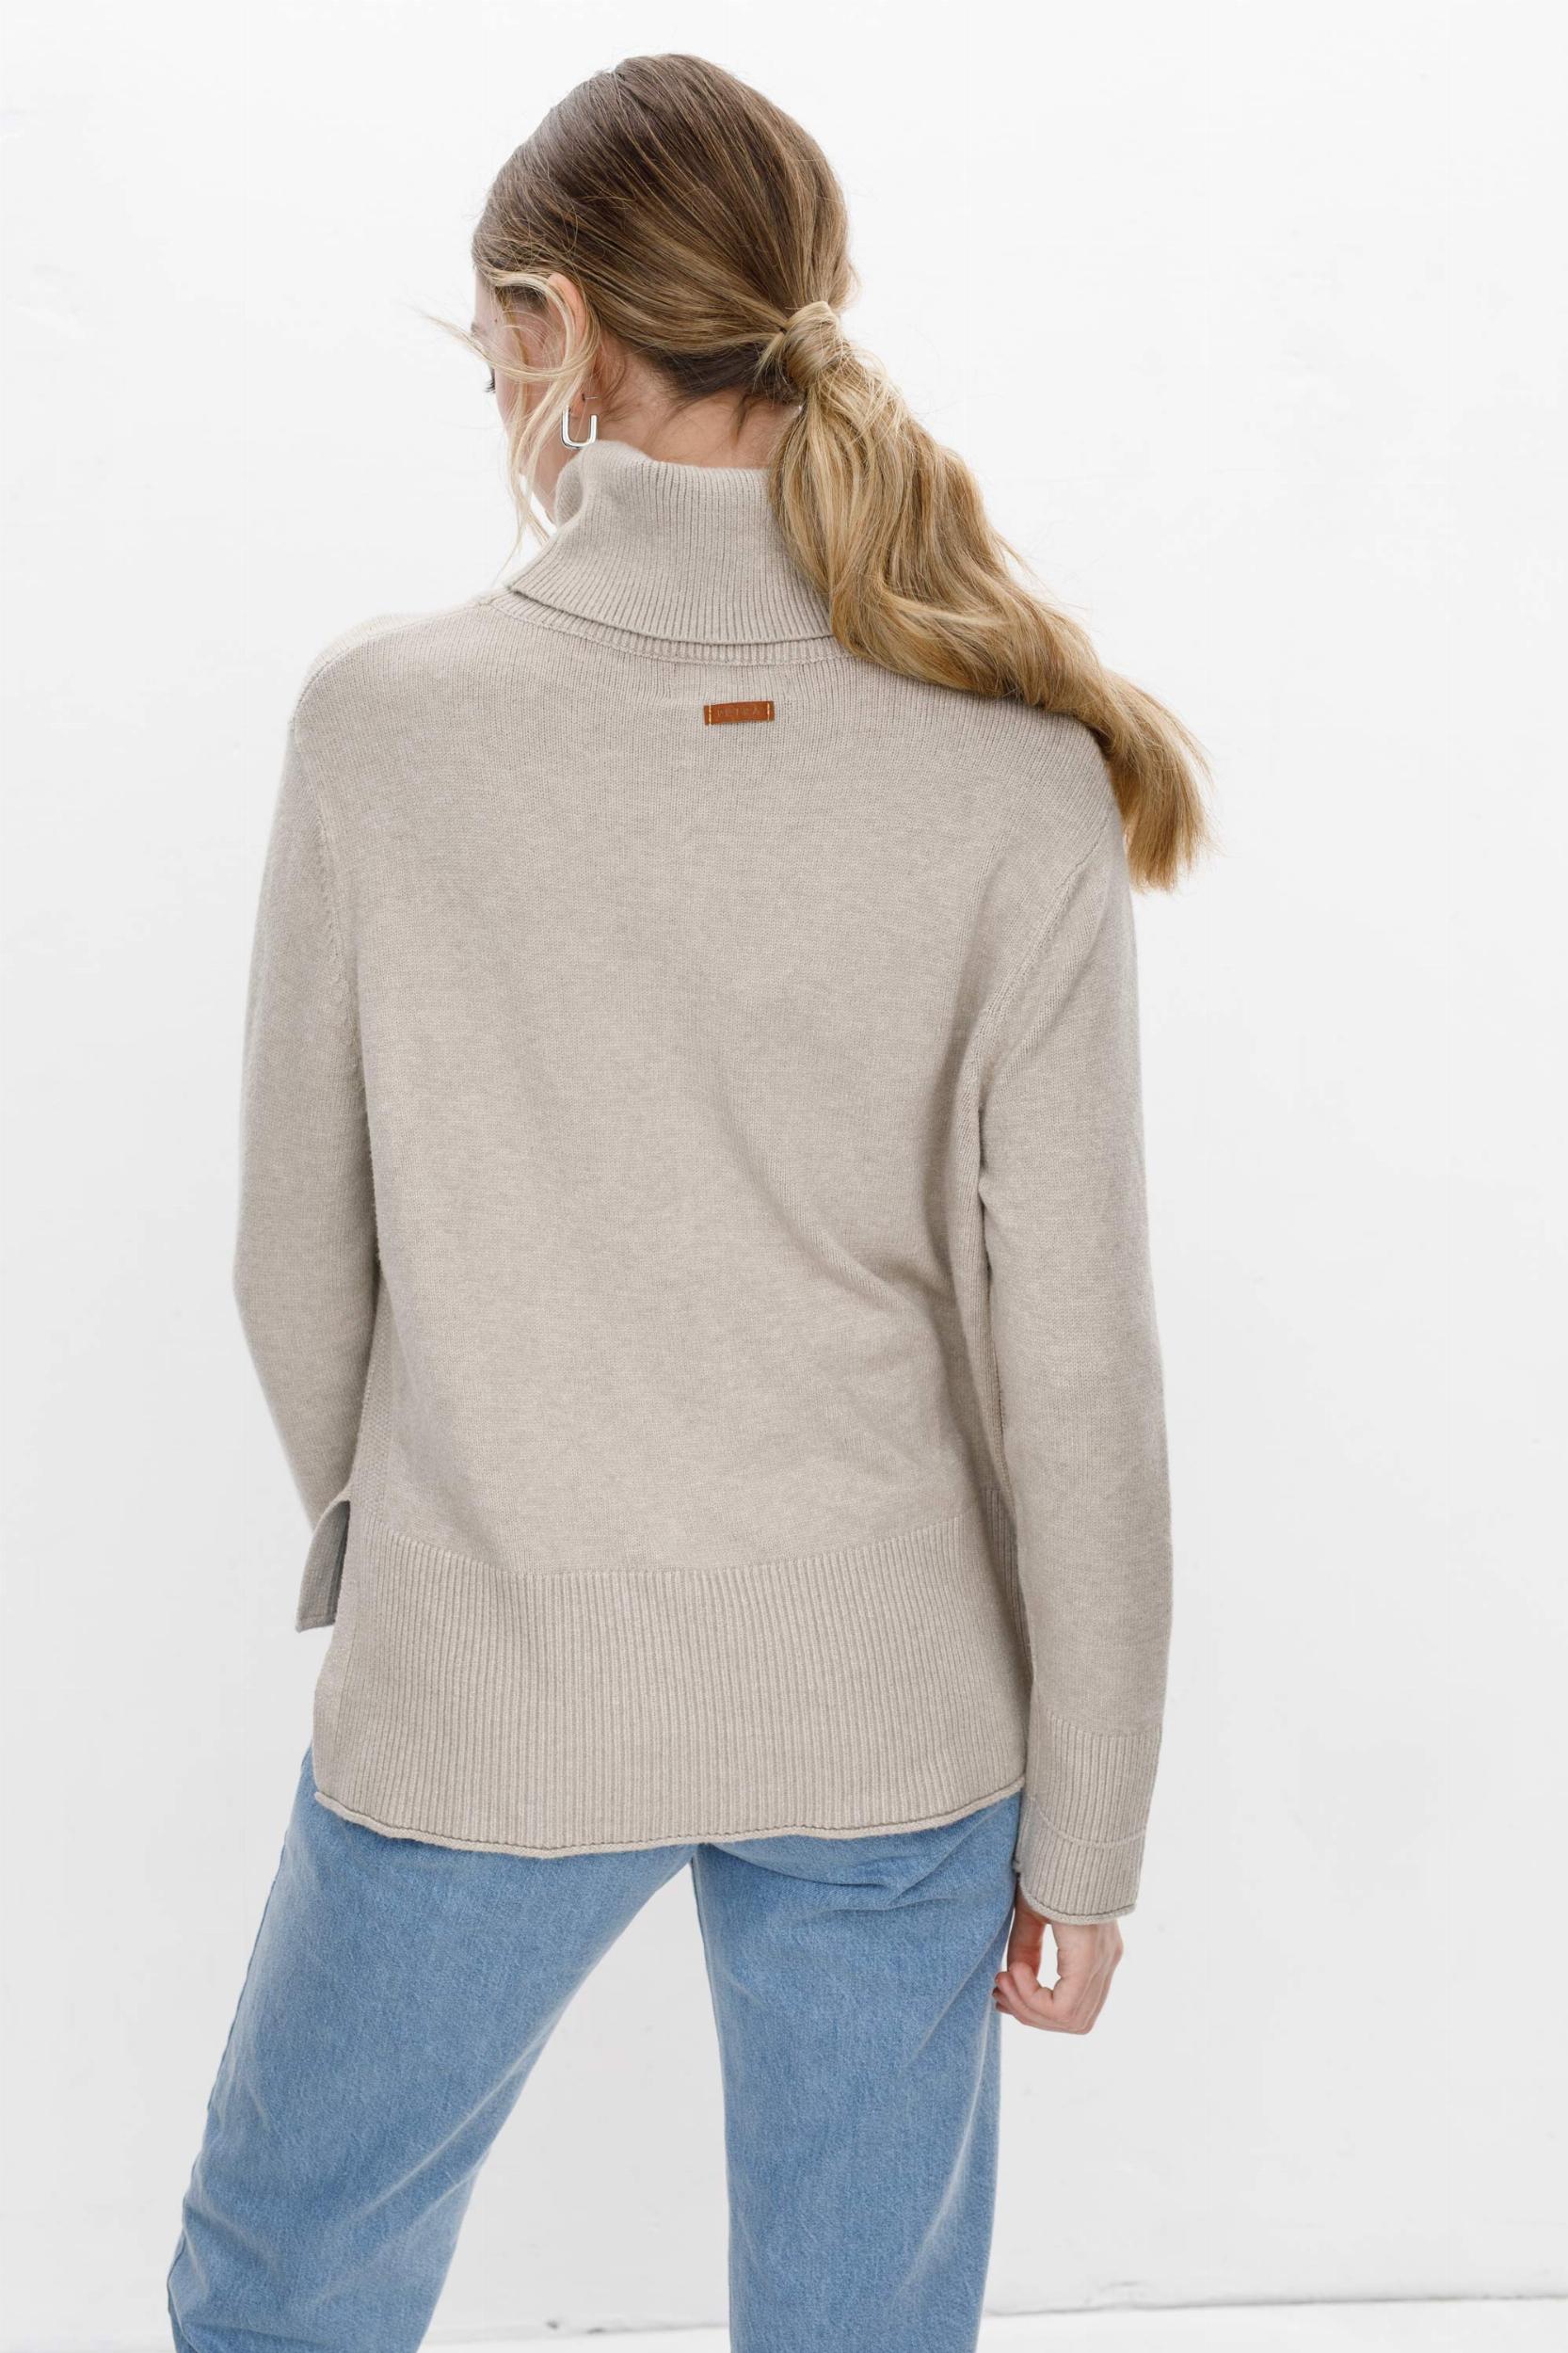 Sweater Polera Serrana vison talle unico